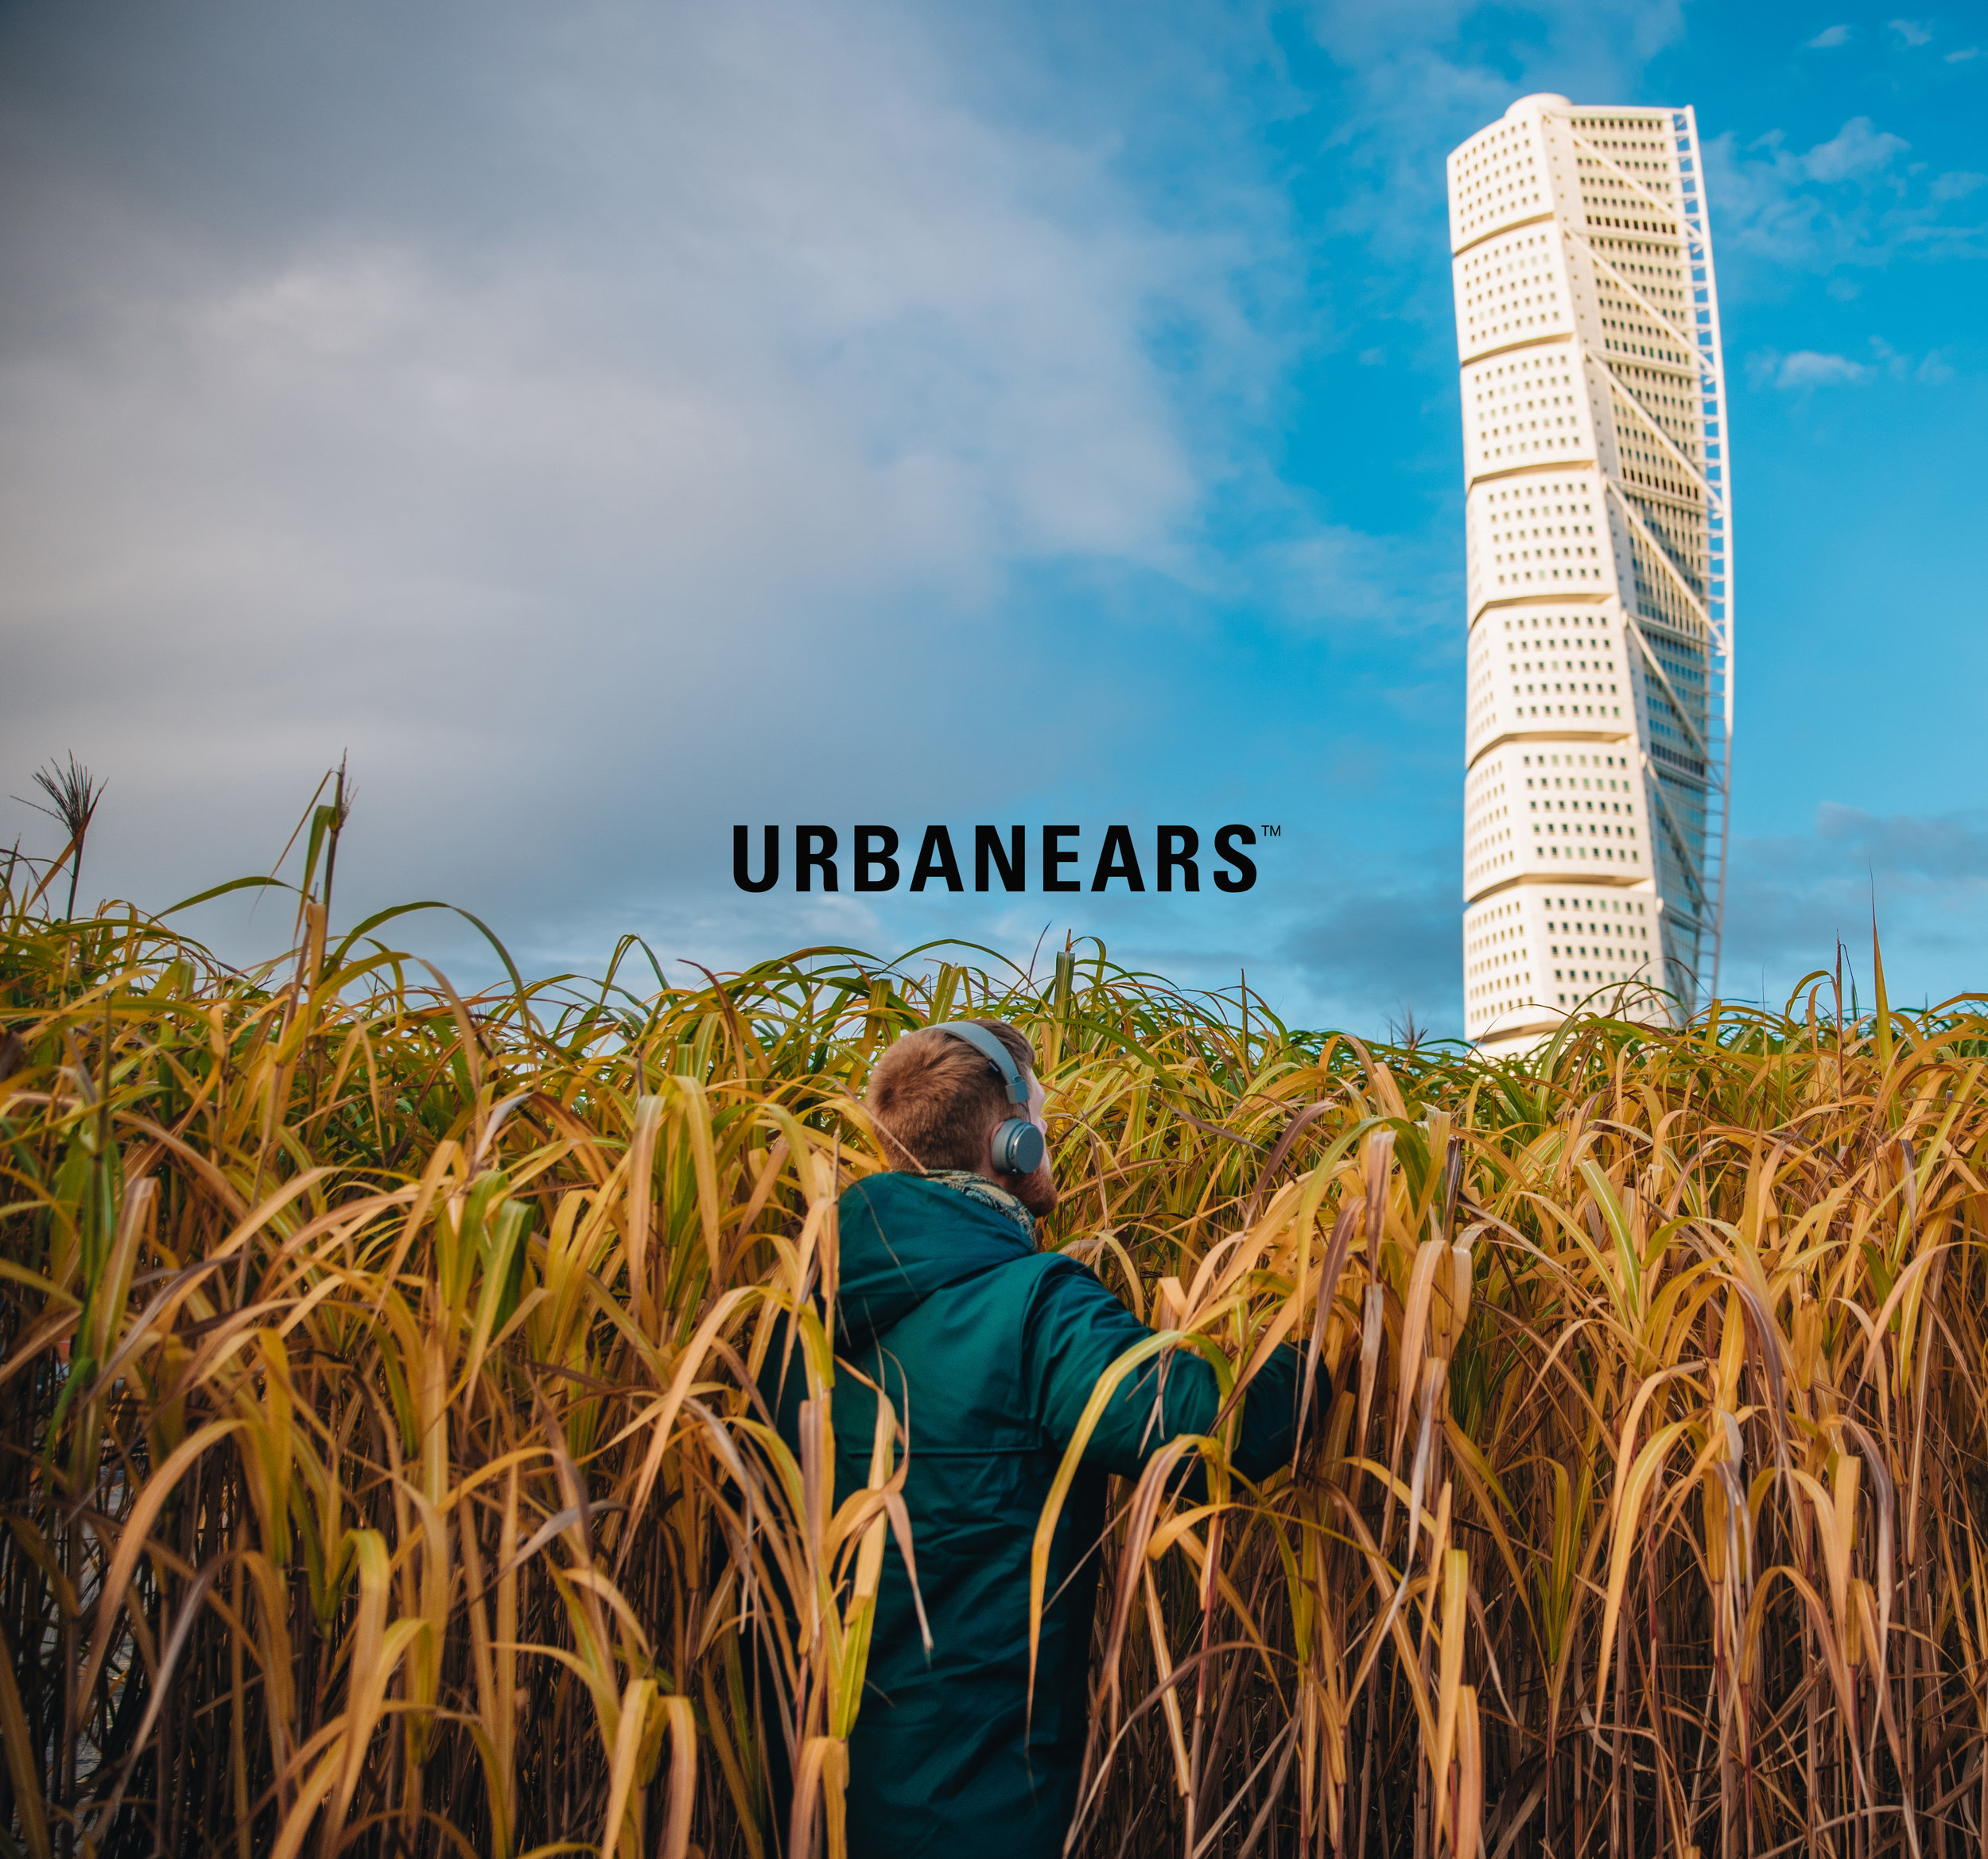 urbanears-2 copy.jpg